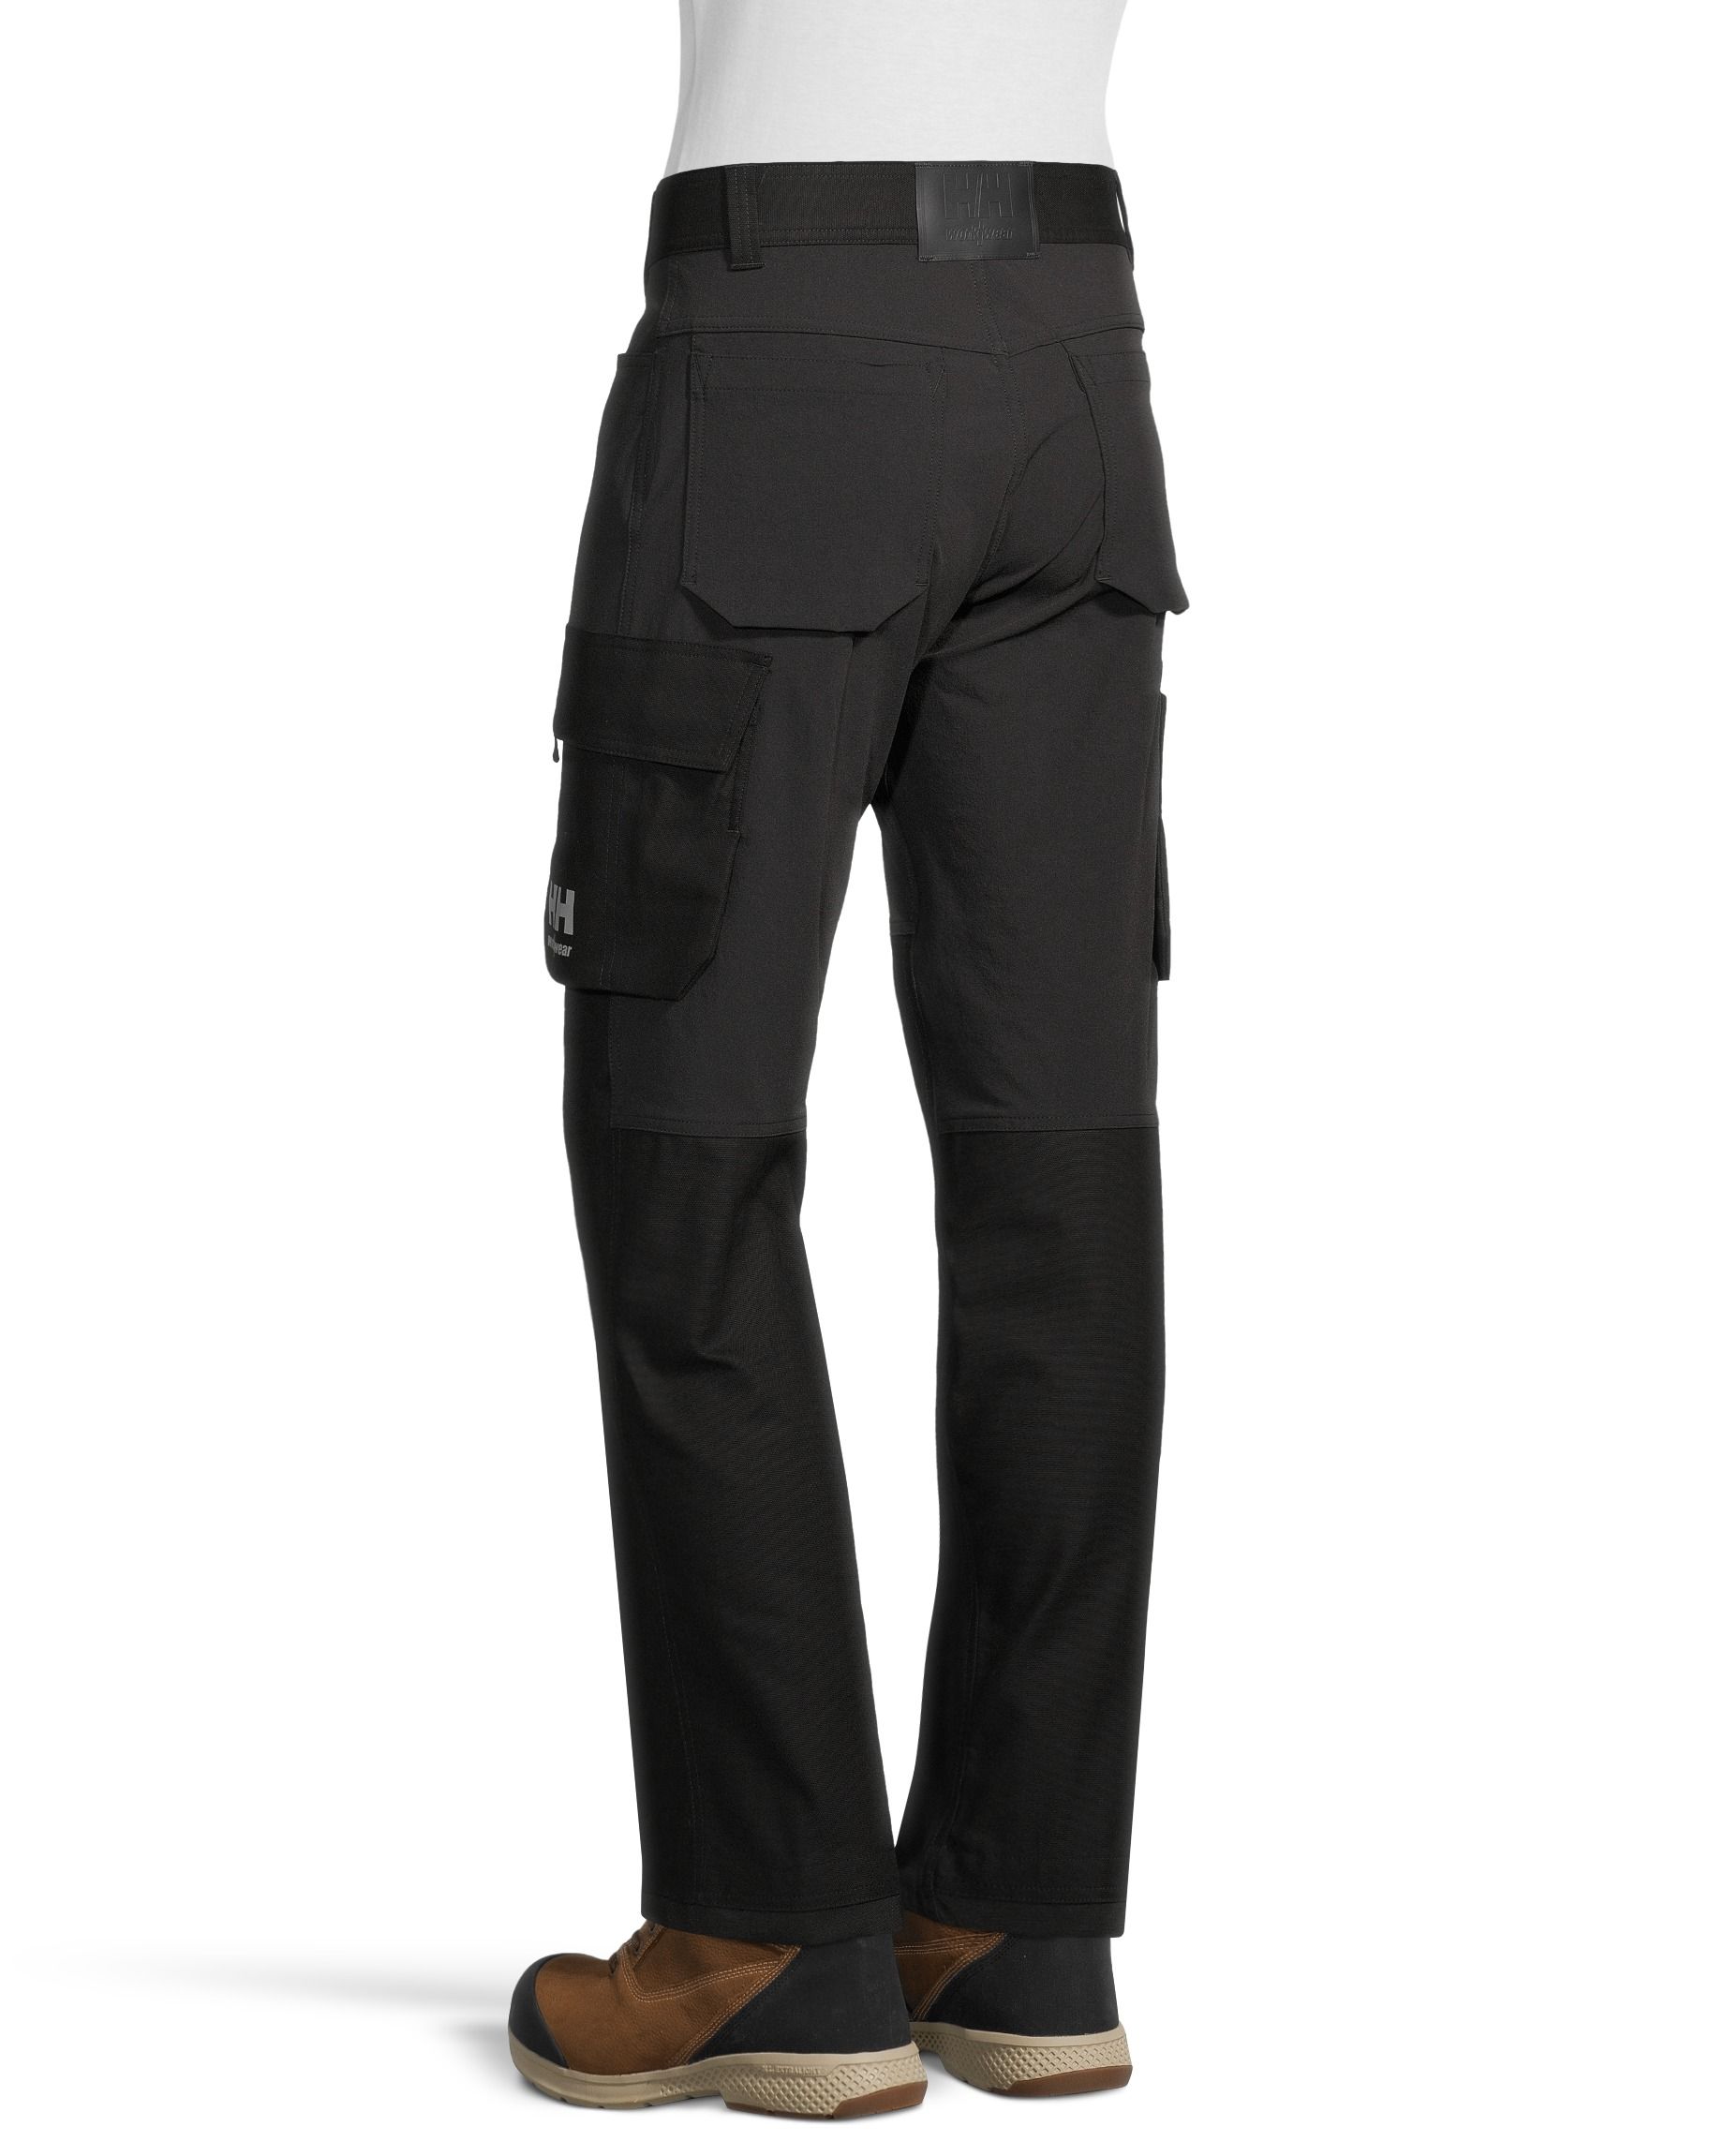 Under Armour Tactical Elite Pants black, Under Armour Tactical Elite Pants  black, Pants, Trousers, Men